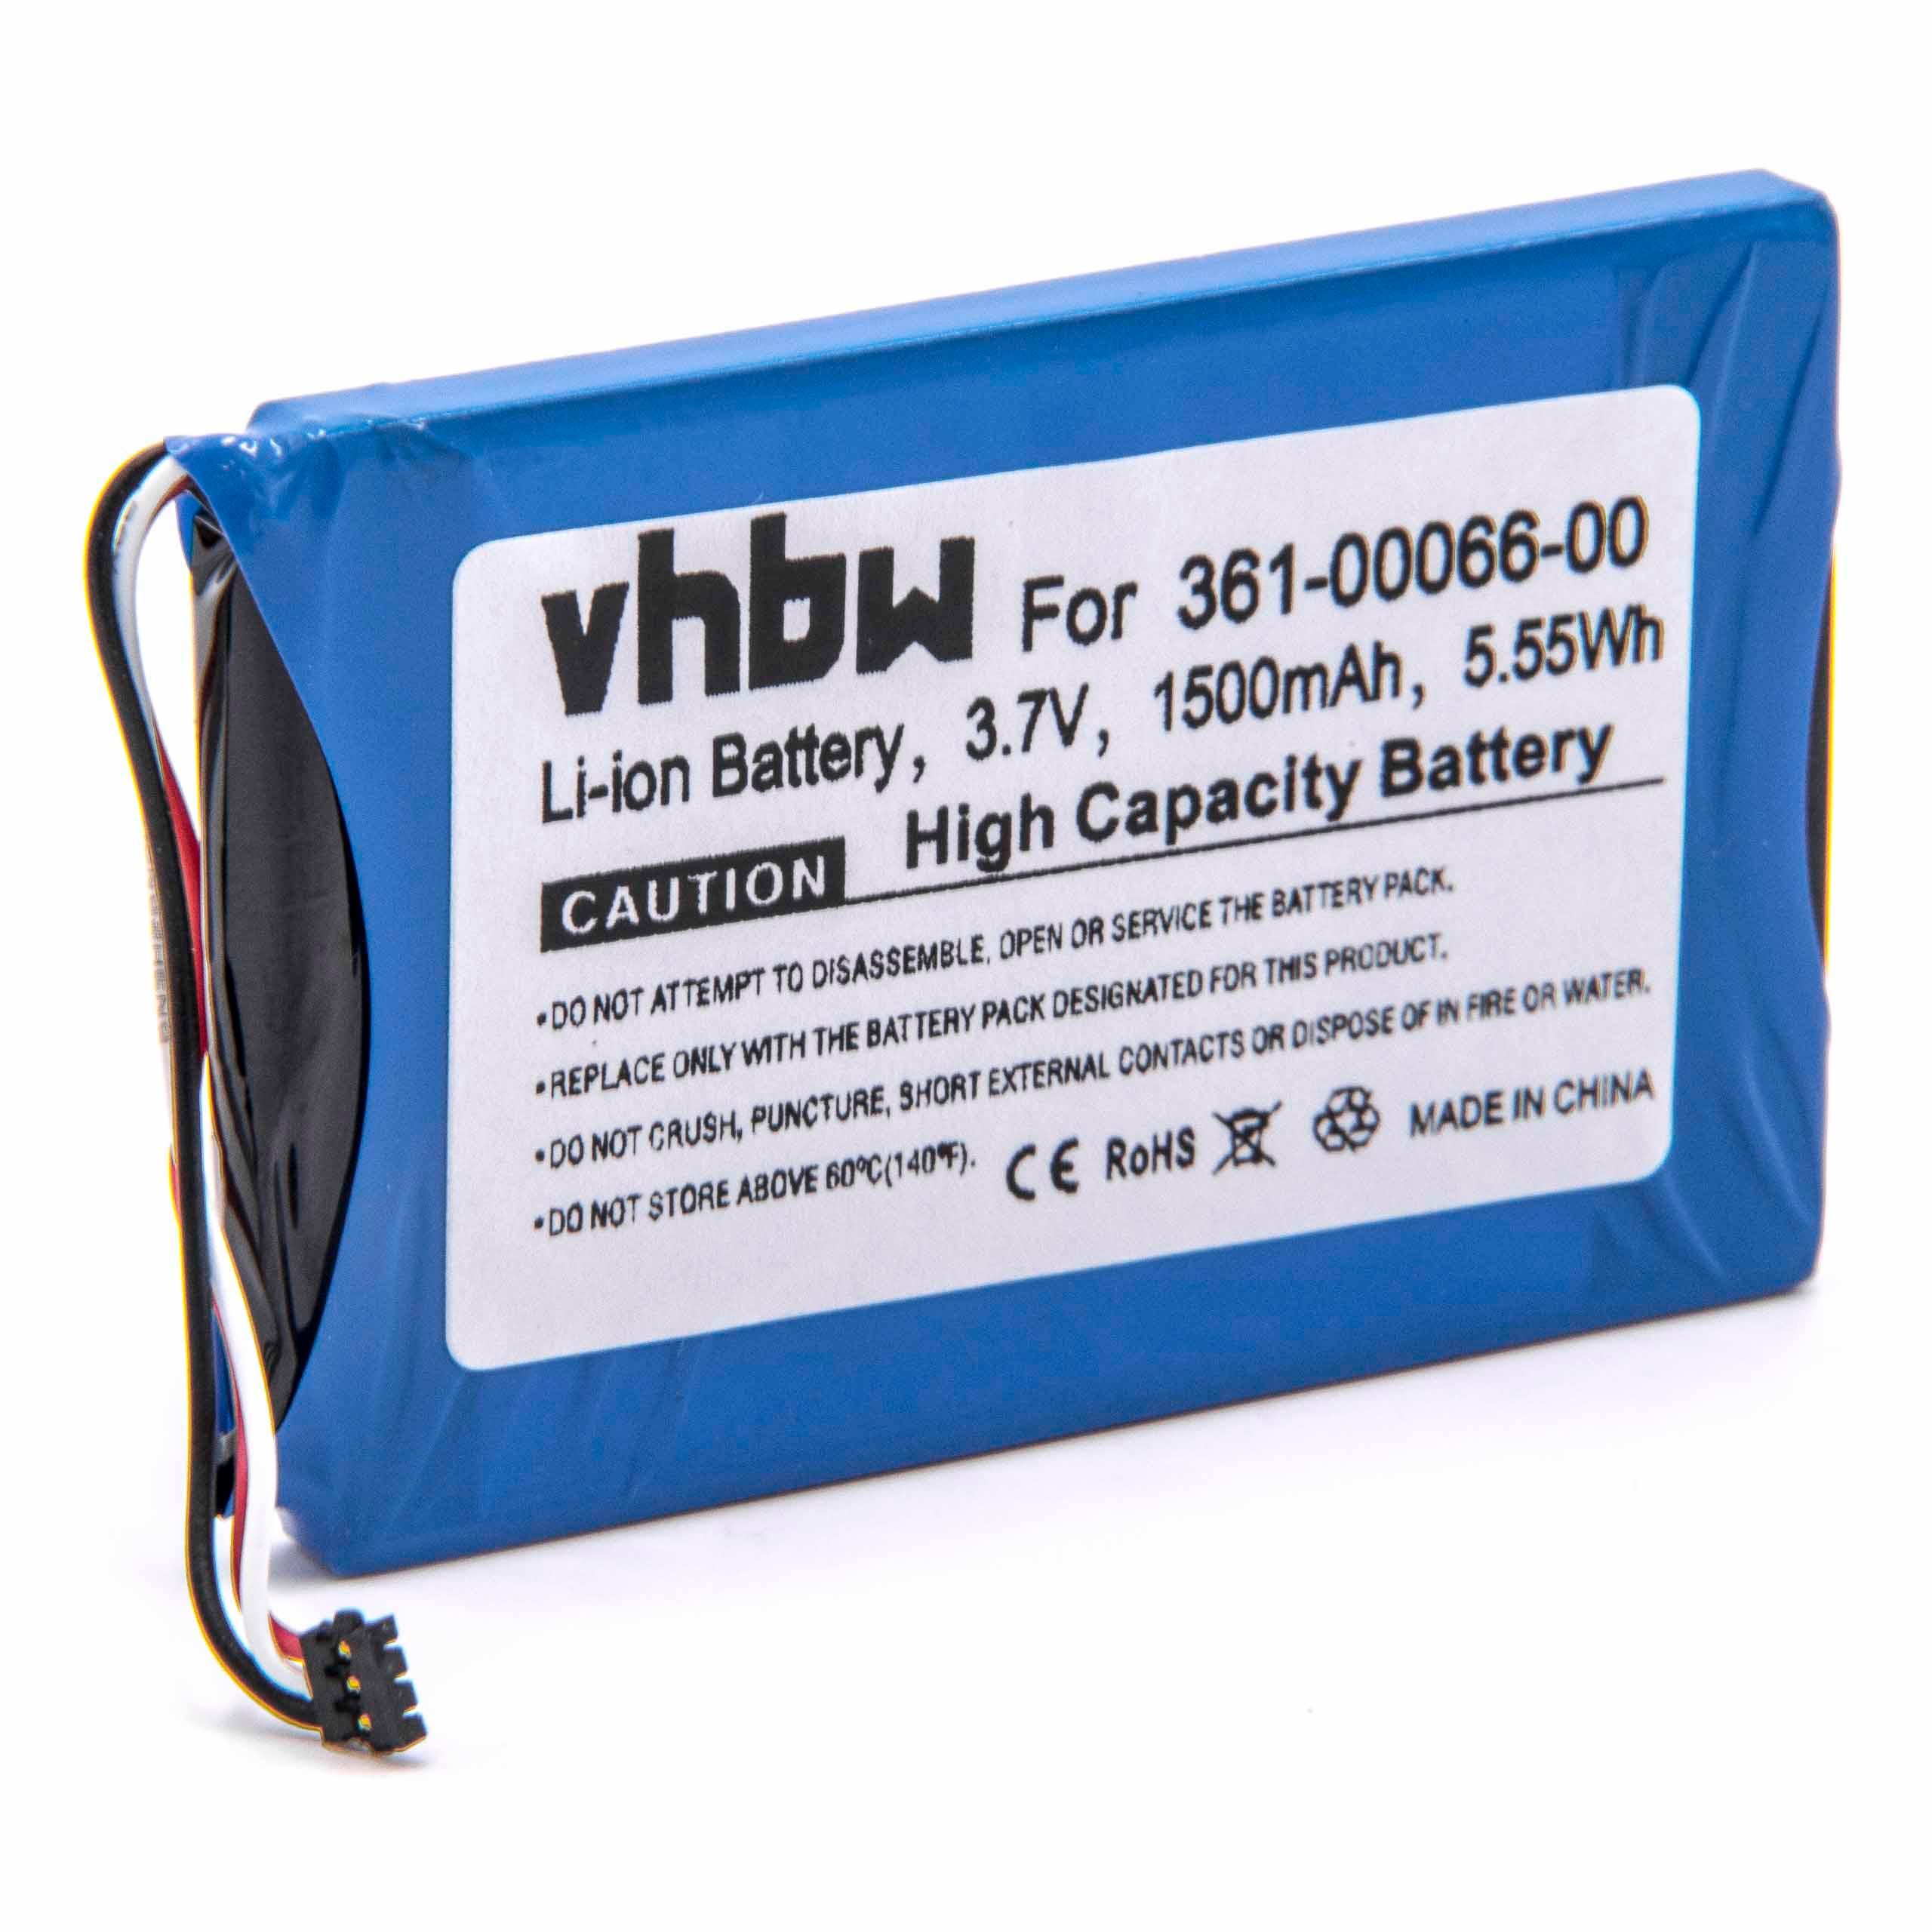 Batterie remplace Garmin 361-00066-00, 361-00066-10 pour navigation GPS - 1500mAh 3,7V Li-ion